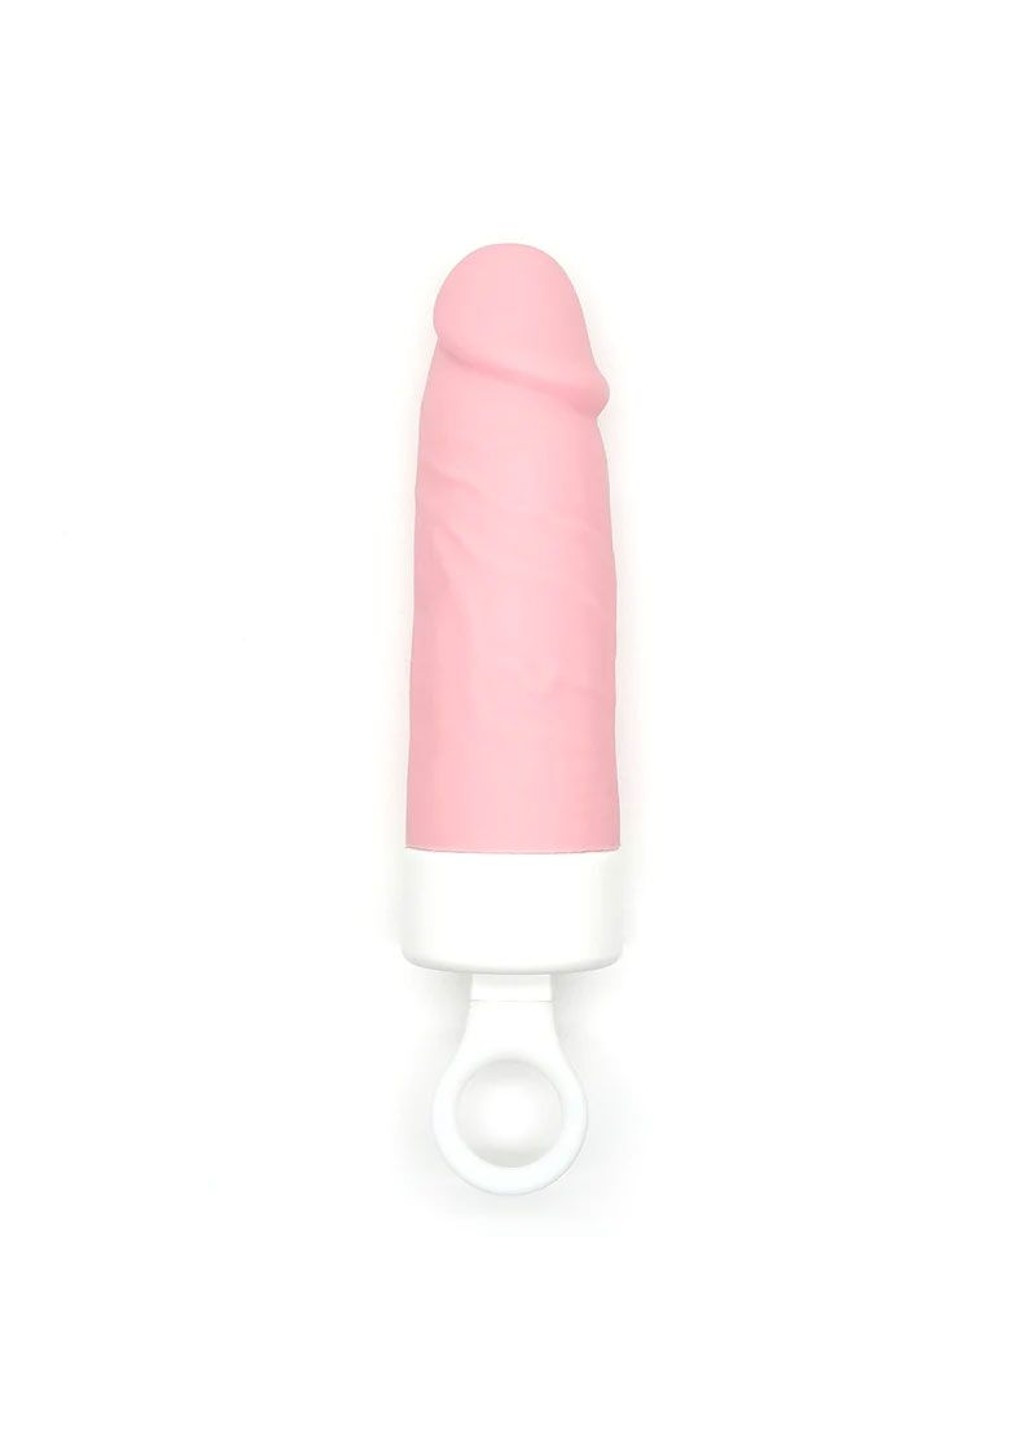 Вибратор Teddy Brown (Pink Dildo), реалистичный вибратор под видом мороженого CuteVibe (258261871)